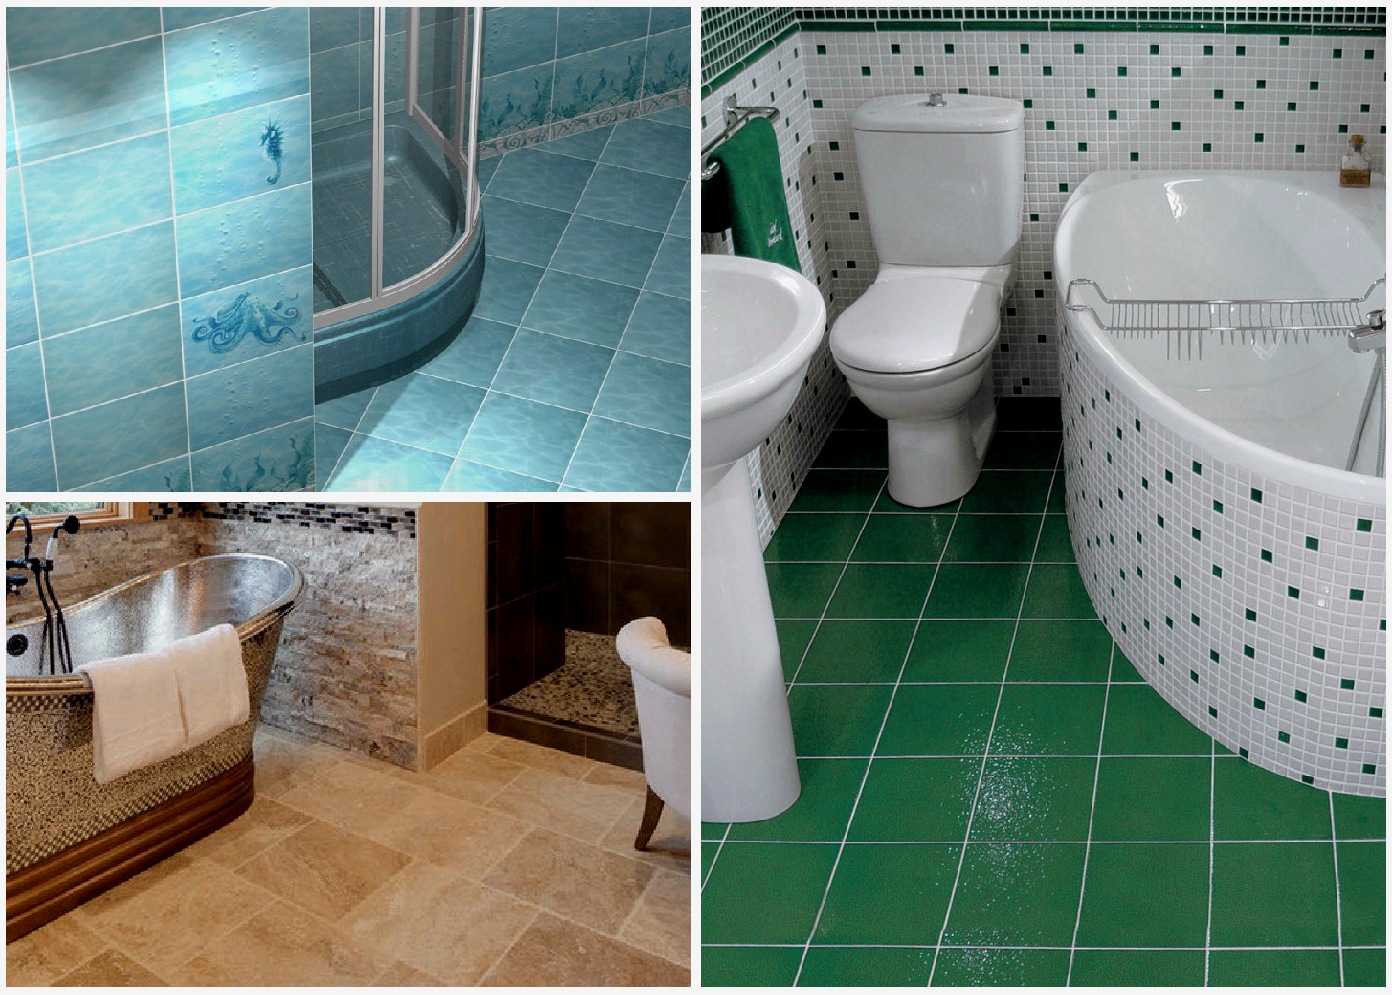 Variedades del piso del baño